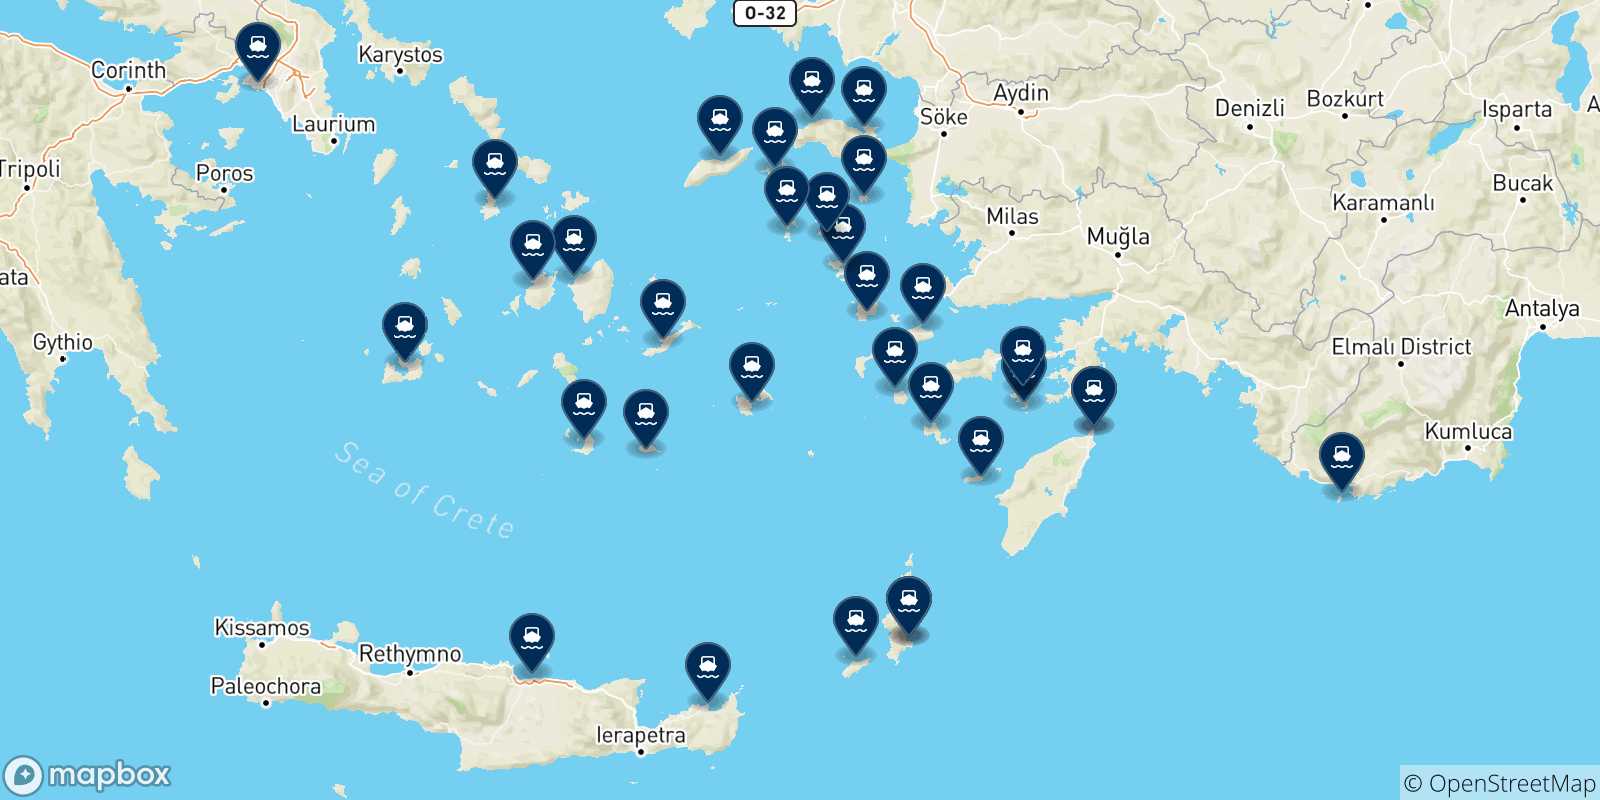 Mappa delle possibili rotte tra Rodi e la Grecia